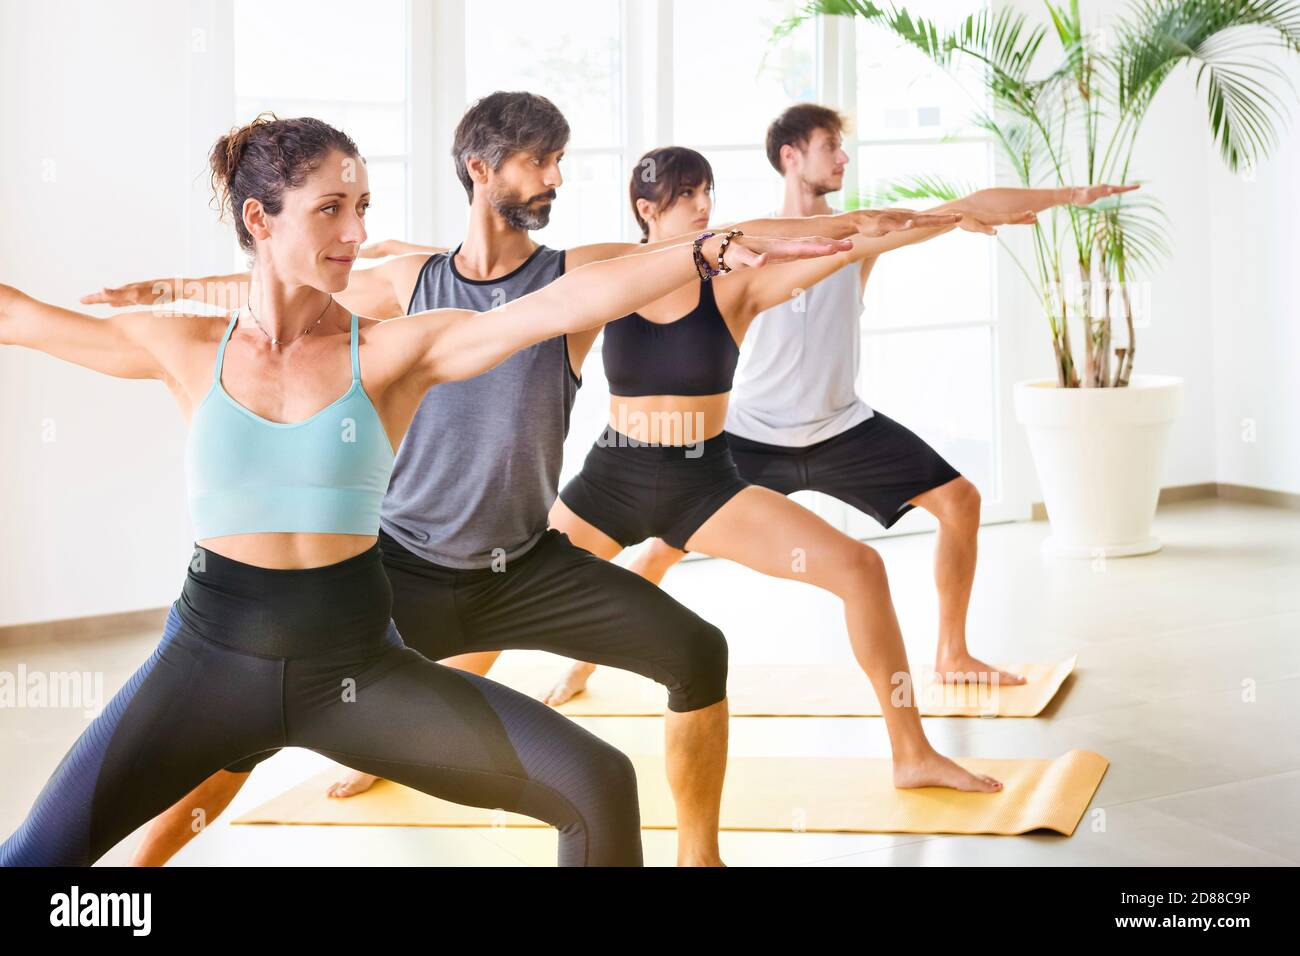 Gruppe von Menschen, Frauen und Männer während der Yoga-Klasse stehen in einer Reihe und tun Krieger Yoga Pose. Seitenportrait im Innenbereich in einem geräumigen, hellen Fitnessraum Stockfoto